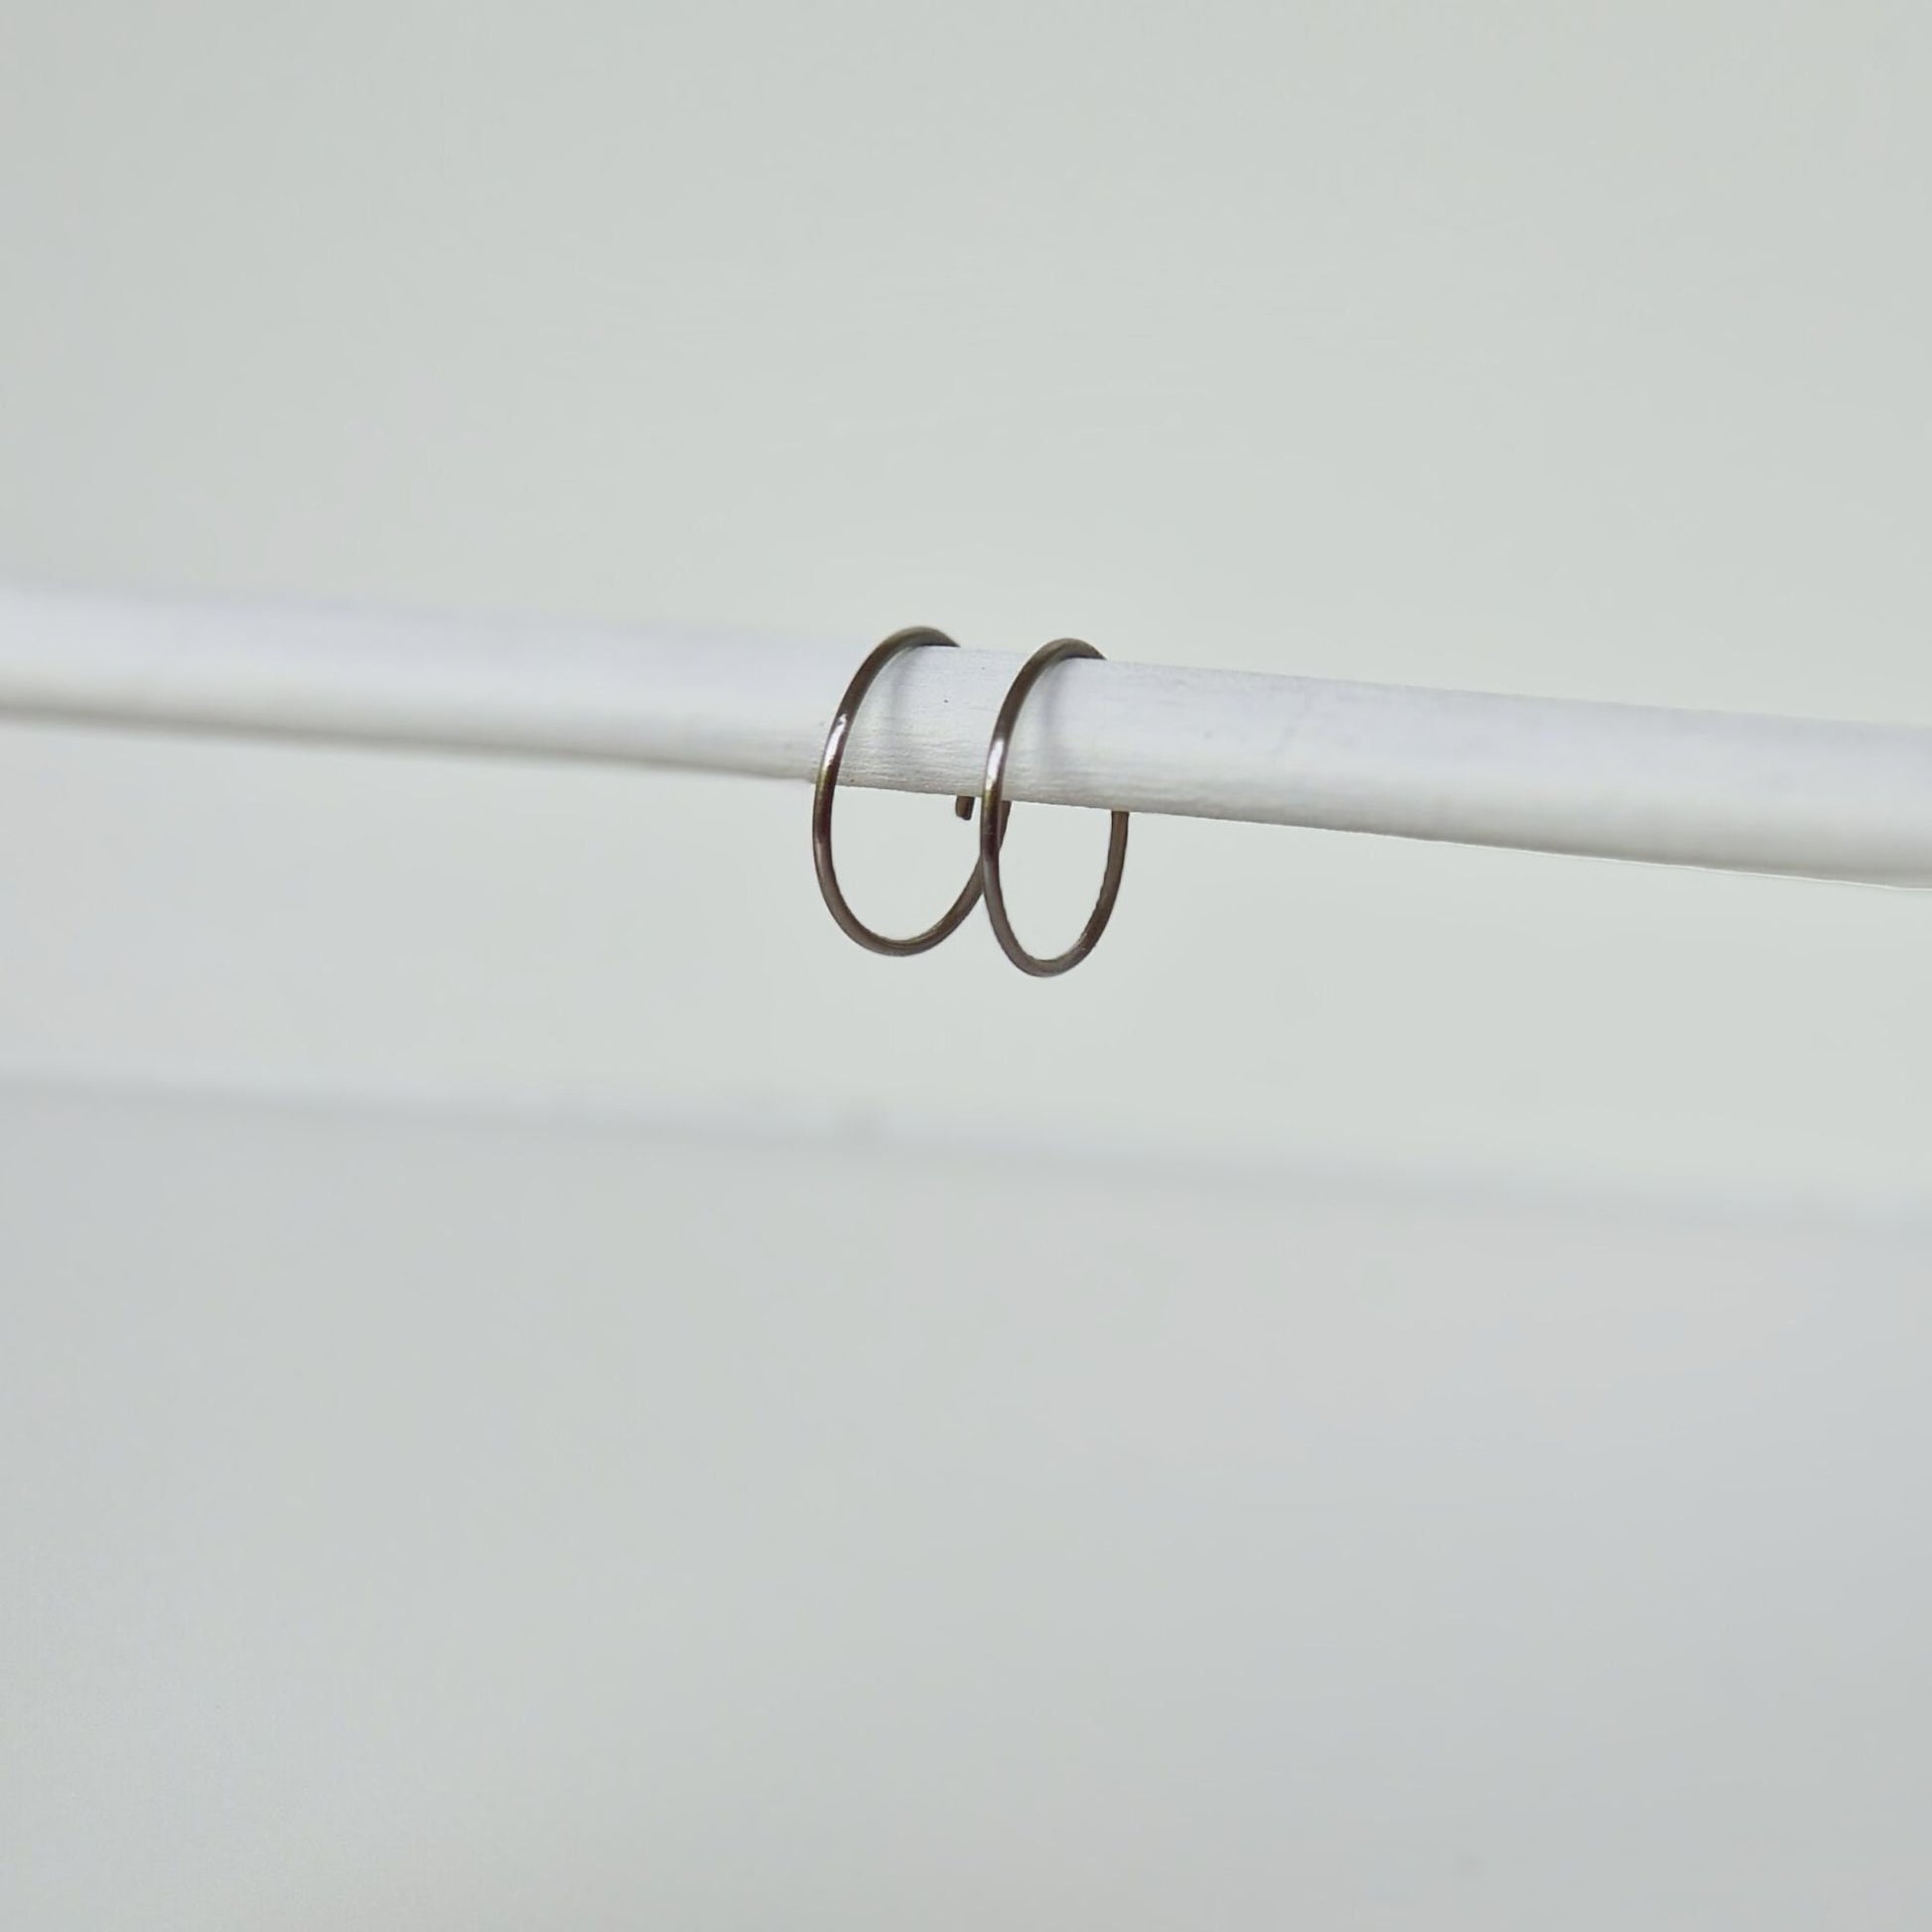 Extra Small Titanium Hoop Earrings, 0.5 Inch Hoops, Nickel Free Silver Color Hoops, Hypoallergenic Earrings for Sensitive Ears